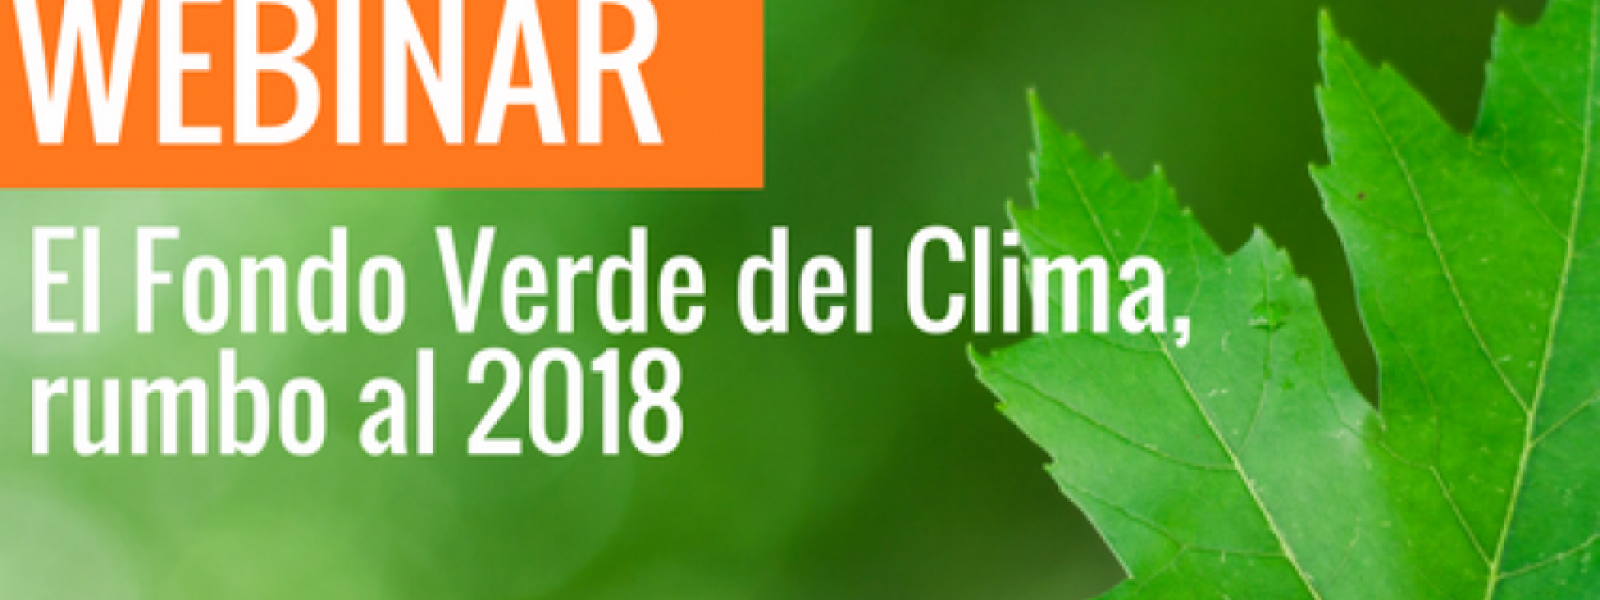 Seminario virtual "El Fondo Verde del Clima, rumbo al 2018"